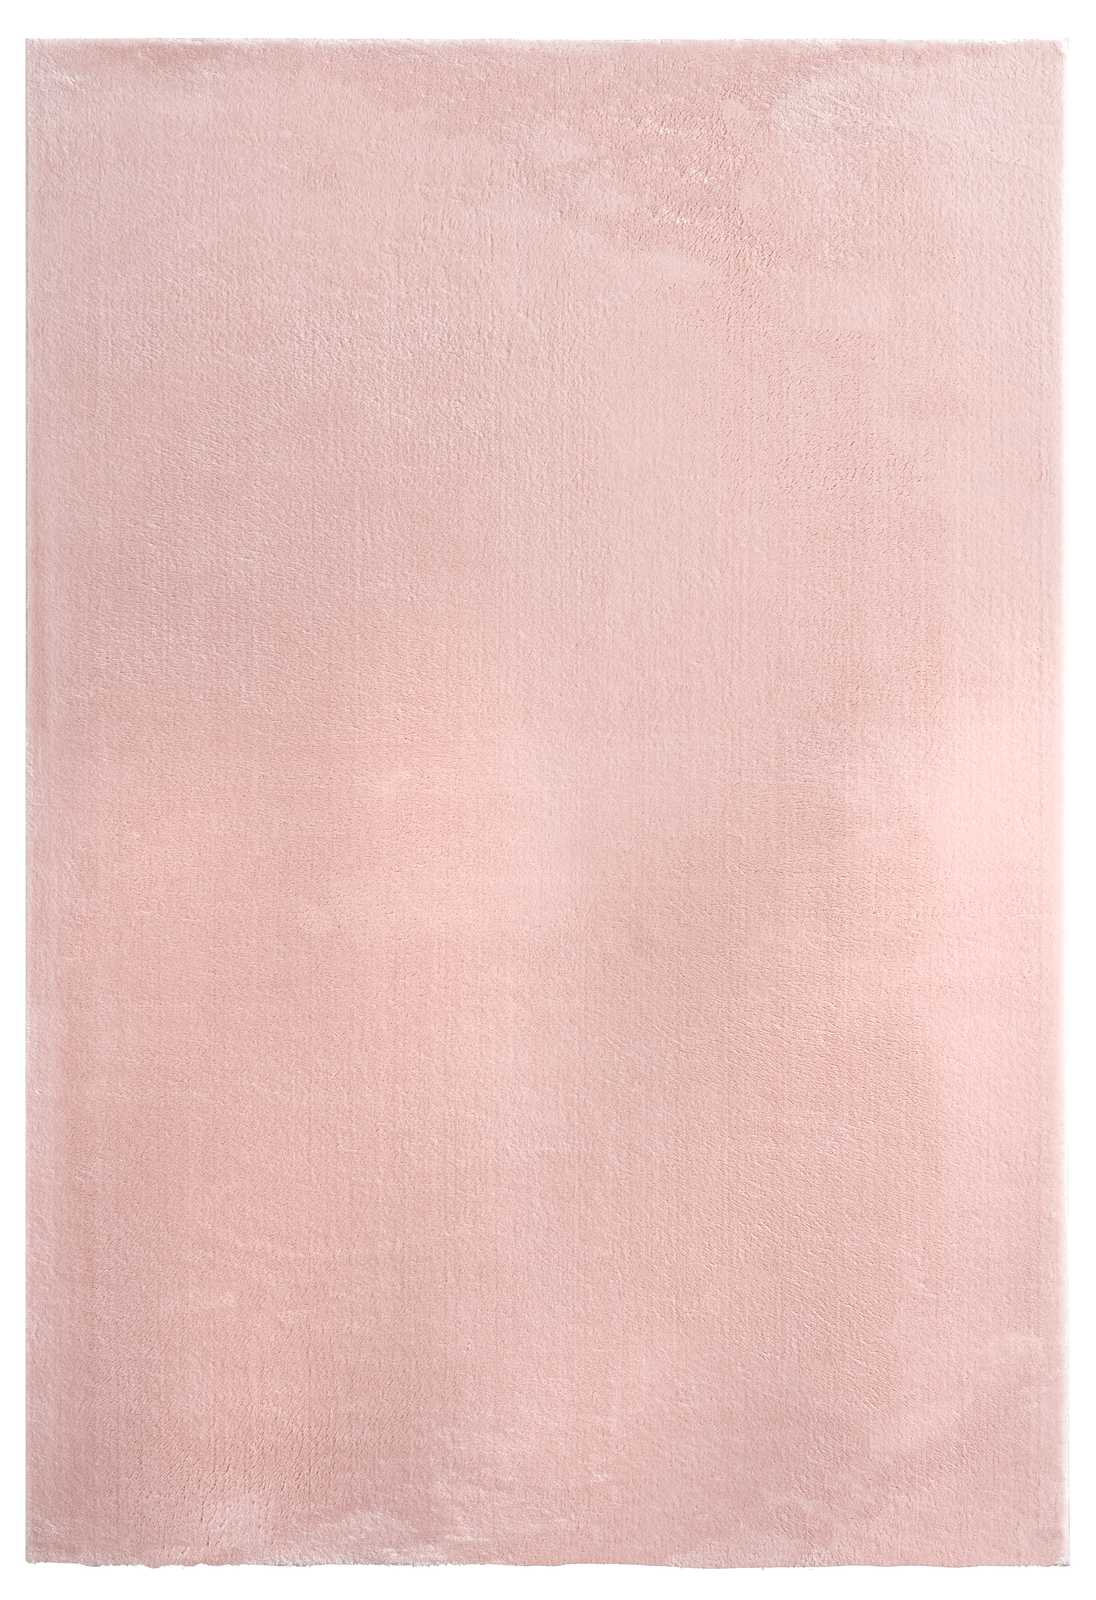             Zarter Hochflor Teppich in Rosa – 170 x 120 cm
        